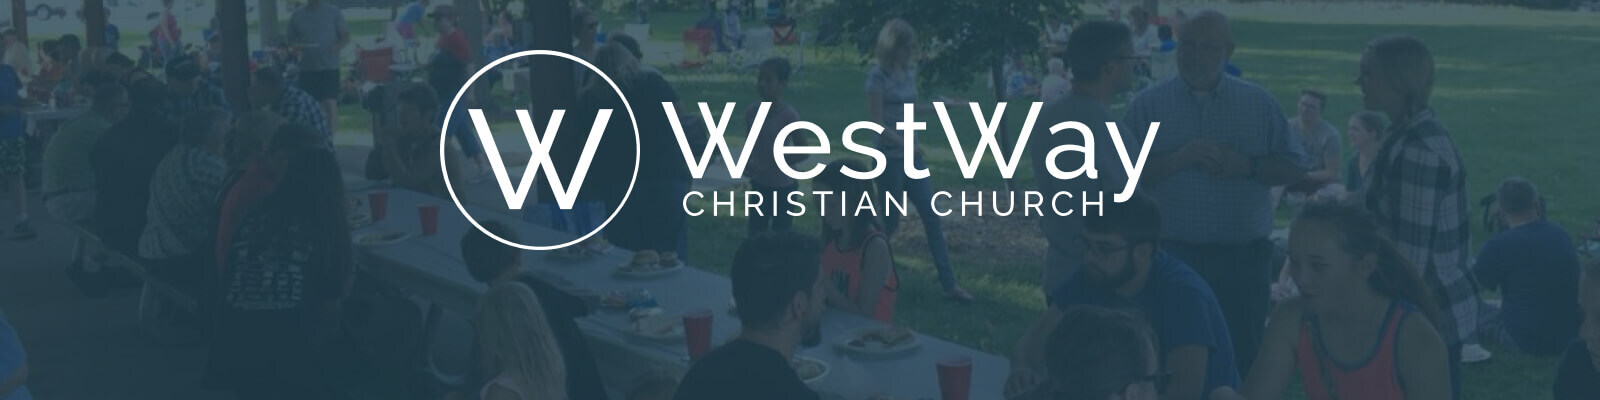 WestWay Christian Church